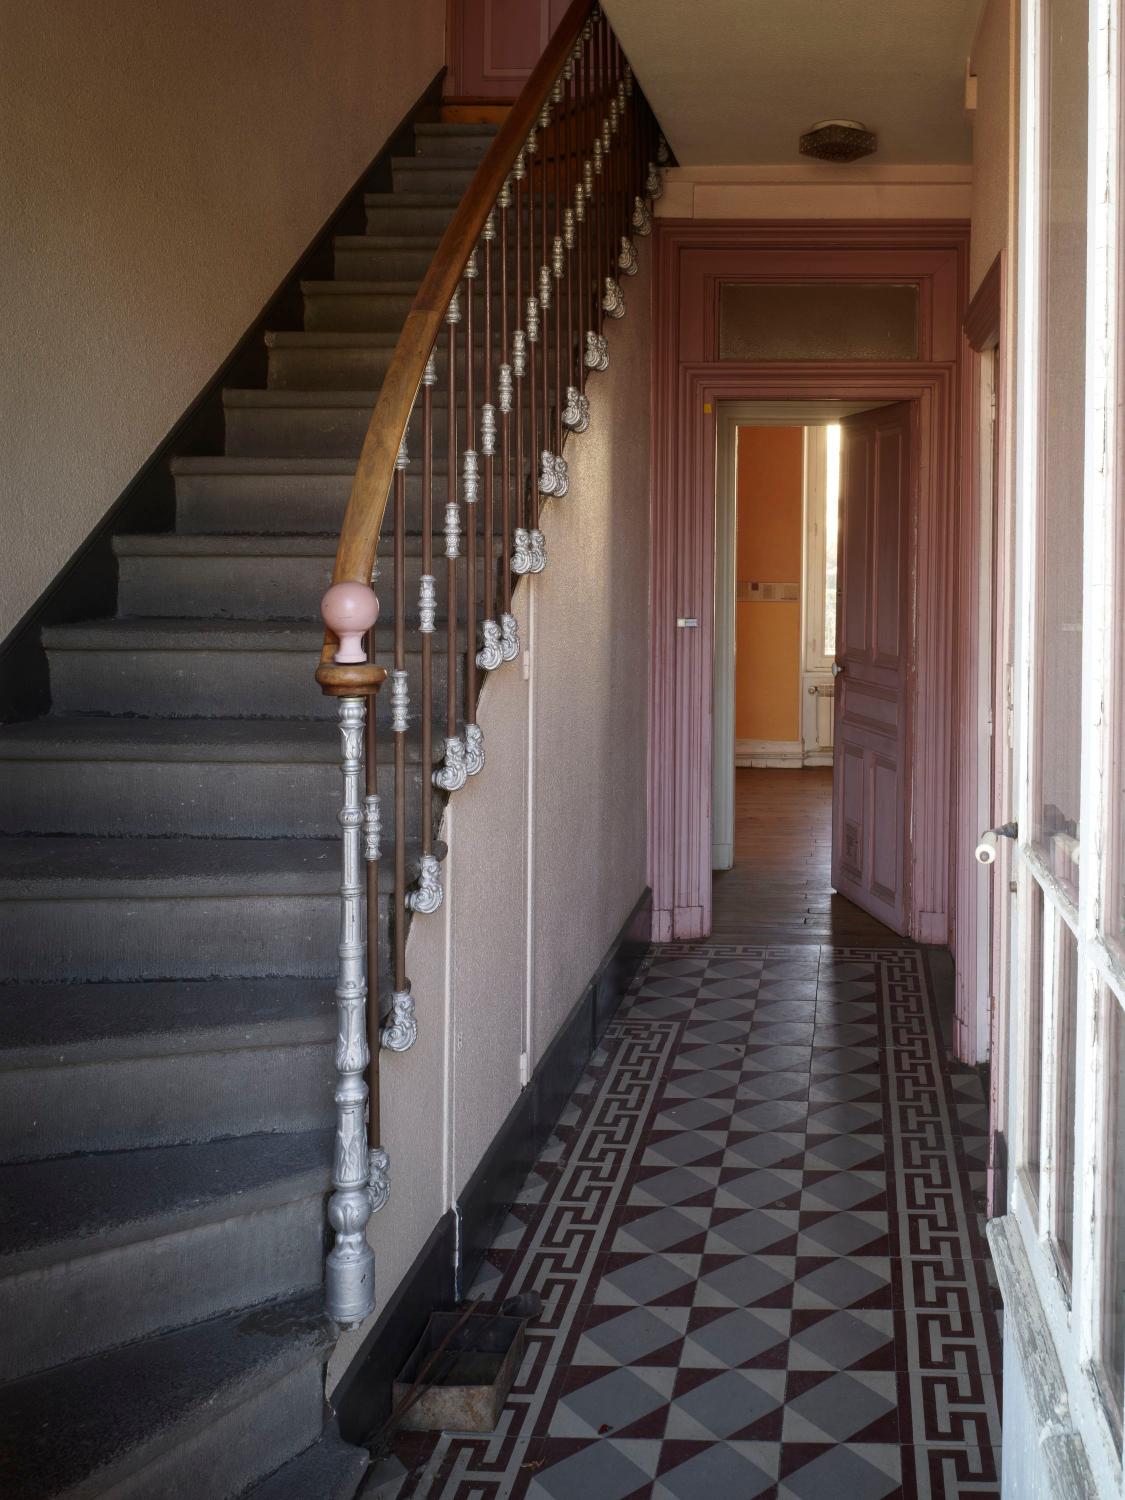 Vue intérieure, couloir et escalier, départ de la main courante suspendue